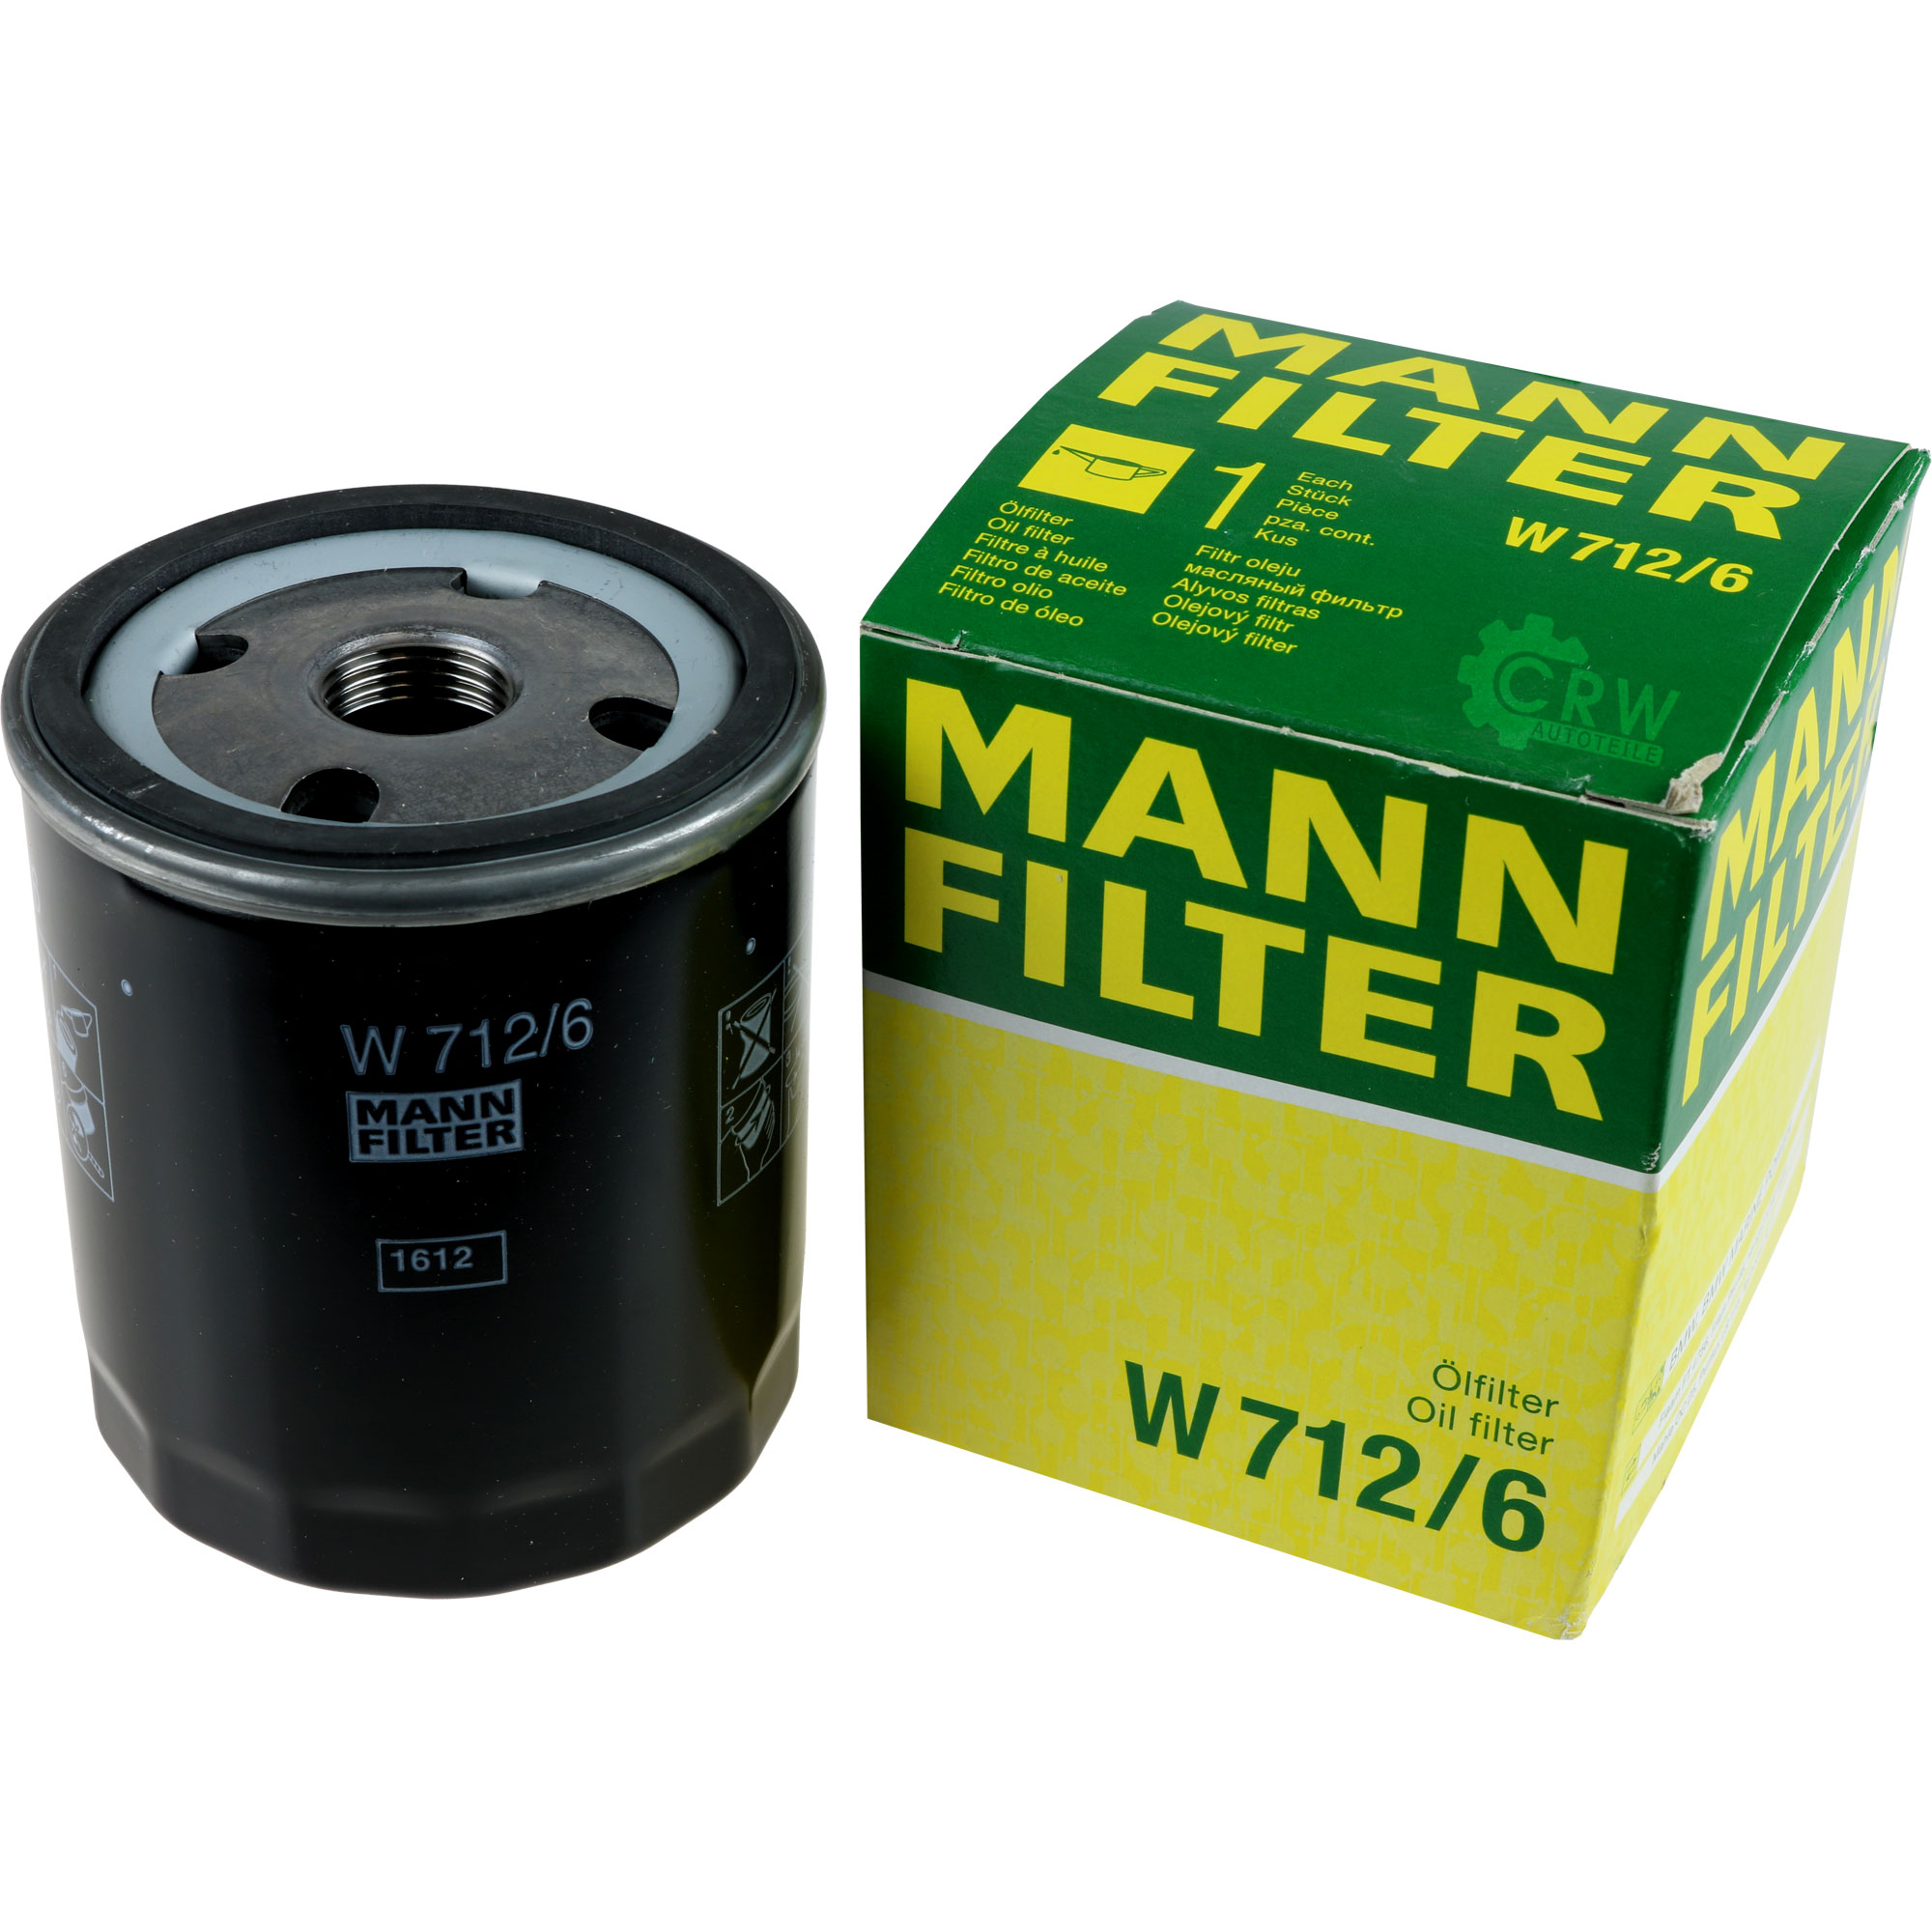 MANN-FILTER Ölfilter W 712/6 Oil Filter